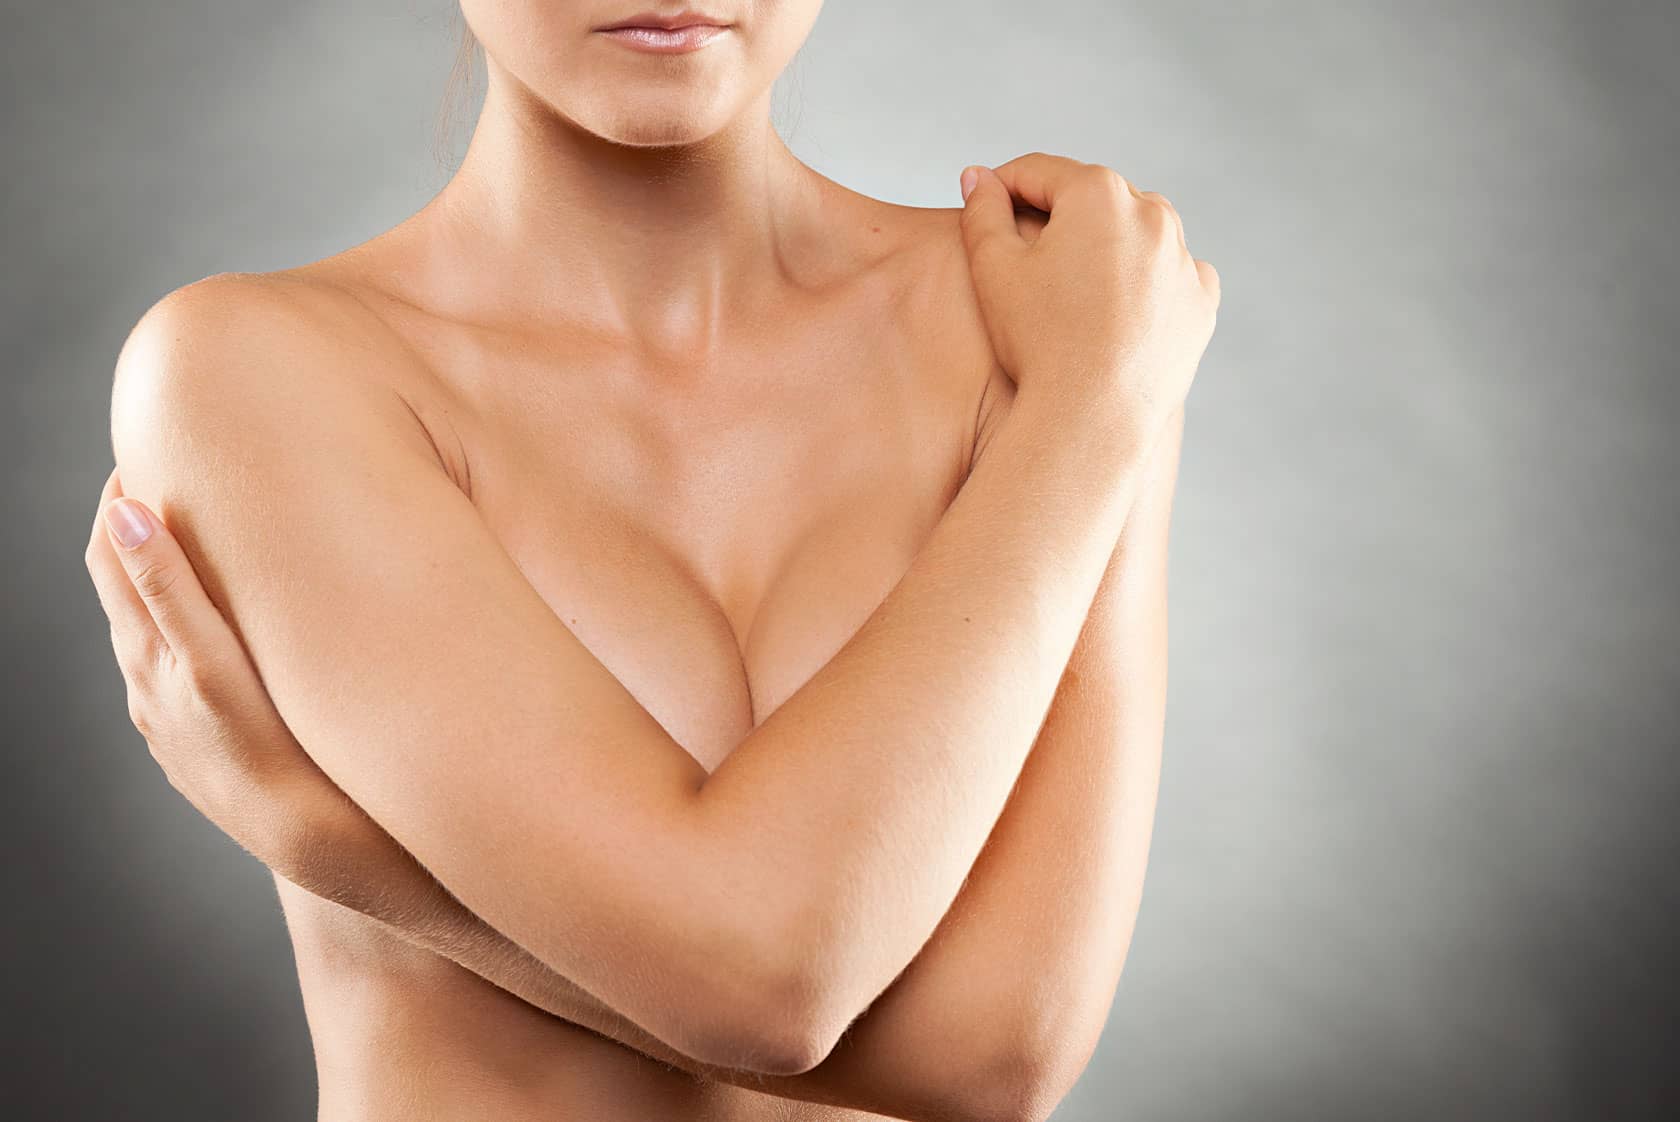 Réduction mammaire : regard des autres | Dr Sarfati | Paris